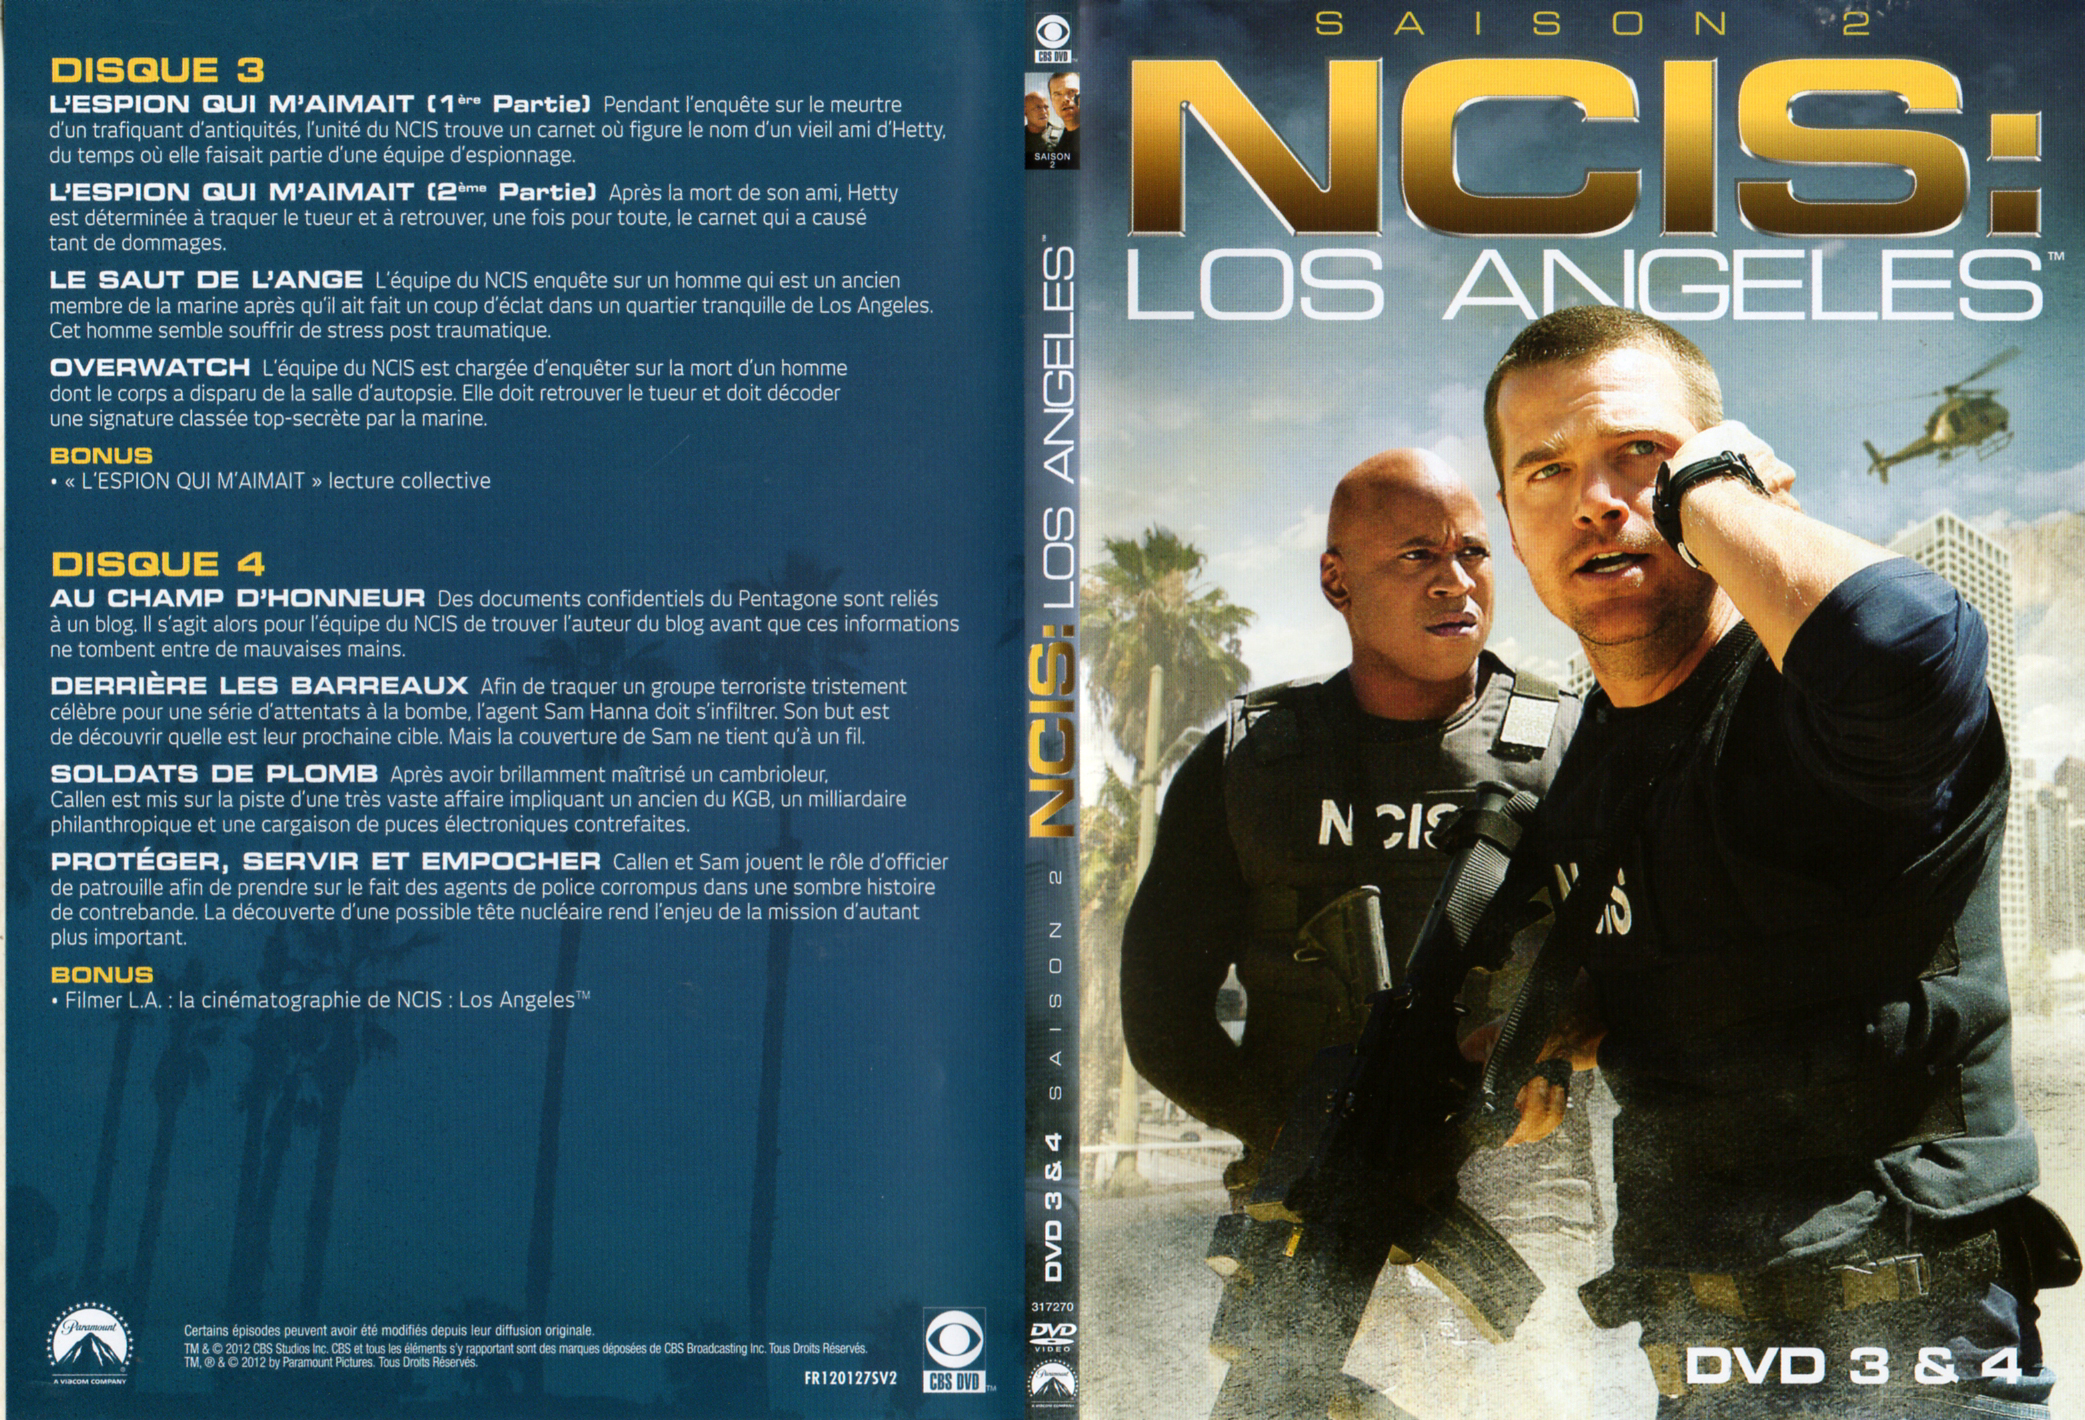 Jaquette DVD NCIS Los Angeles Saison 2 DVD 2